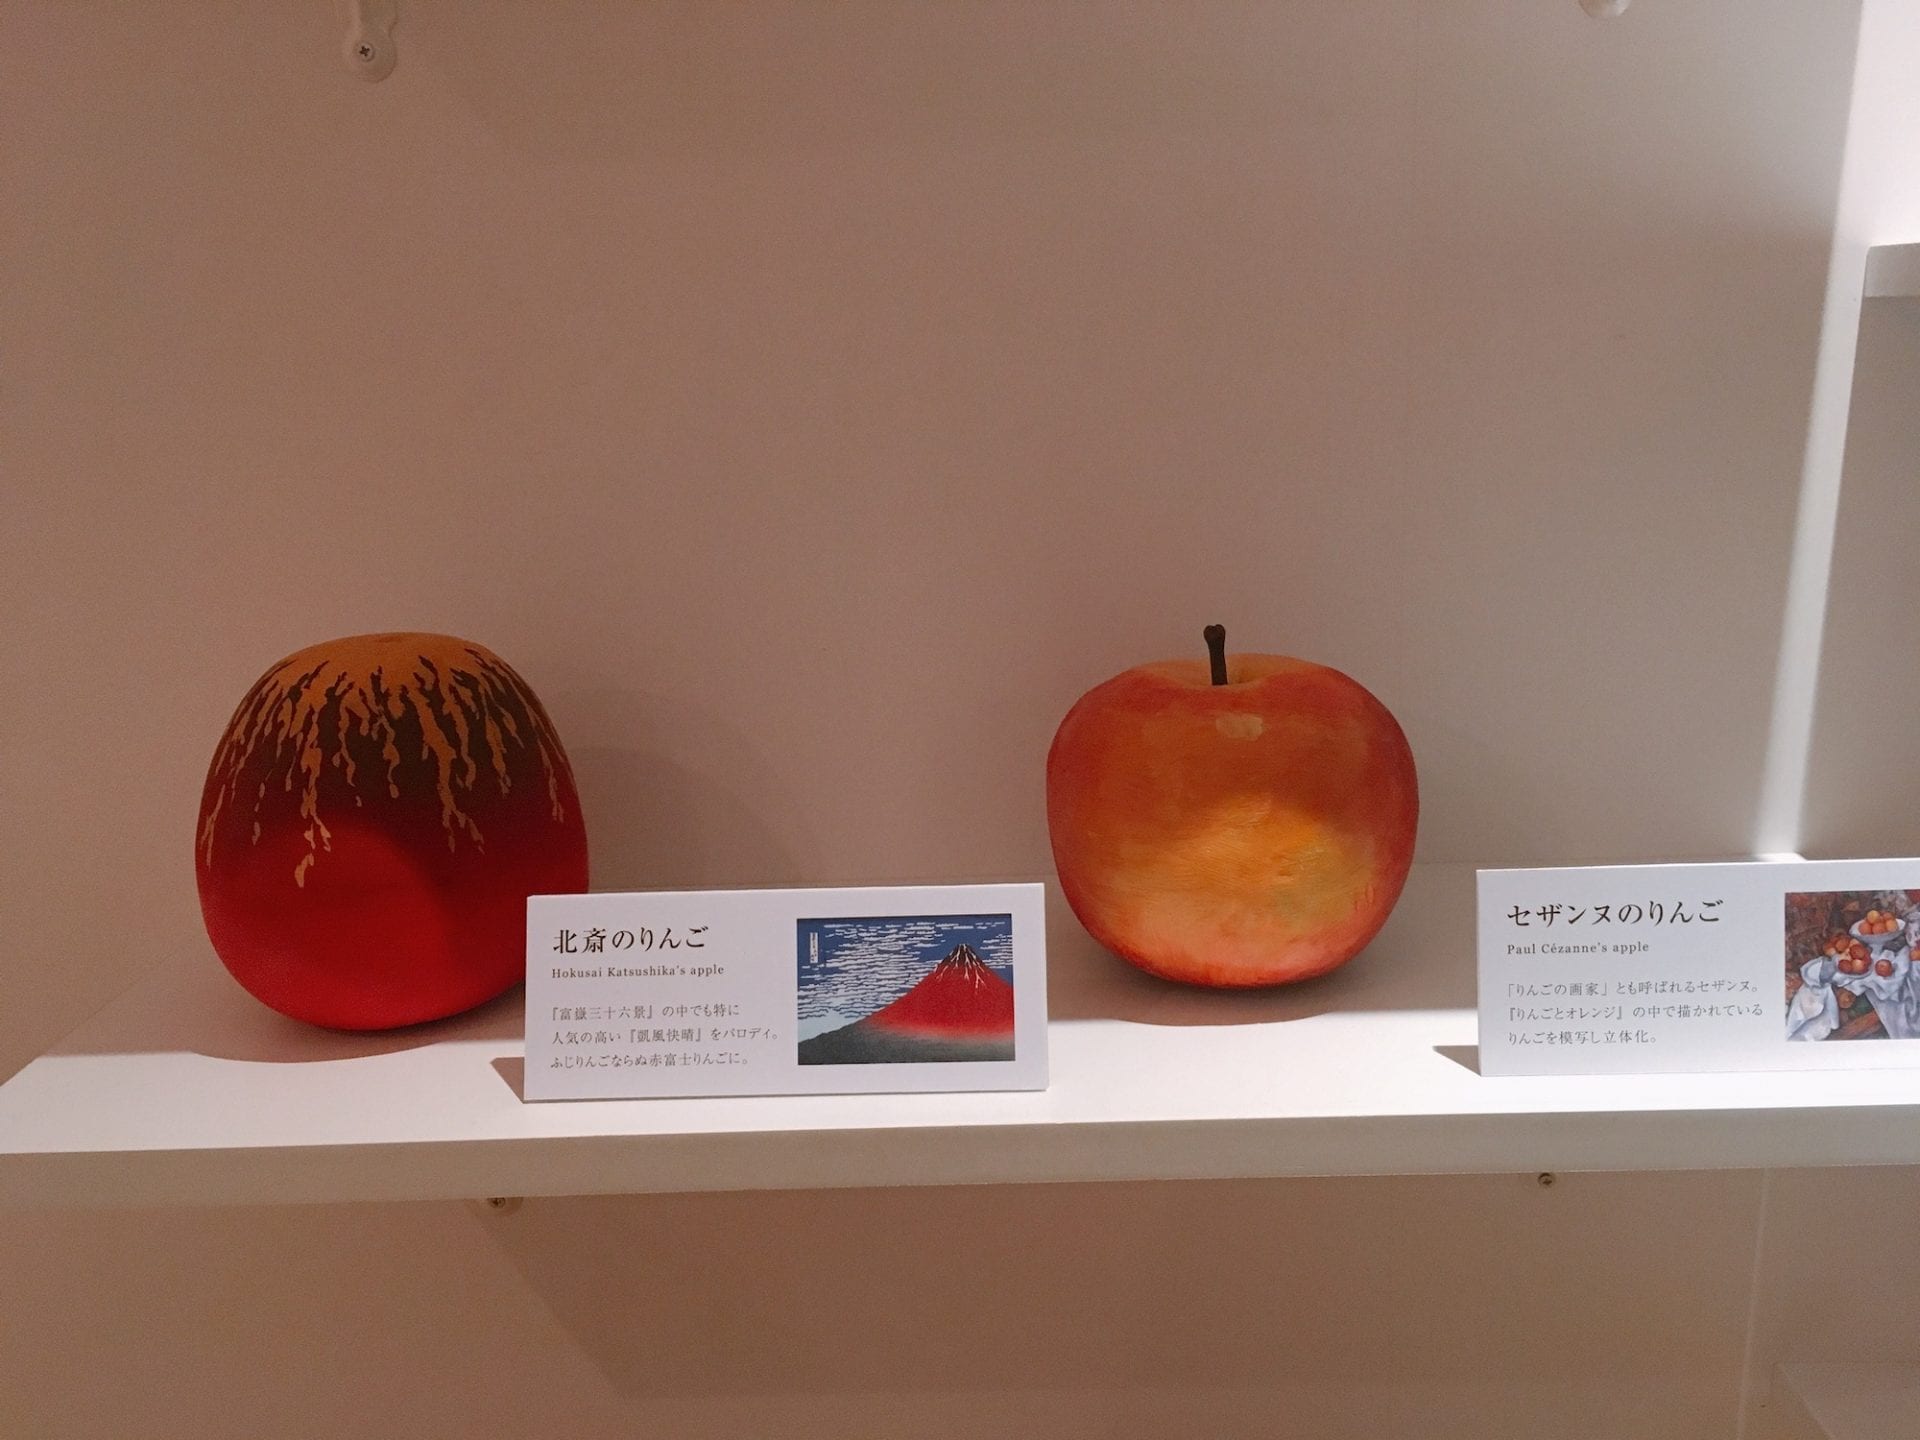 Un étudiant de la Kuwasawa Design School crée des pommes en s'inspirant des styles de 10 artistes célèbres